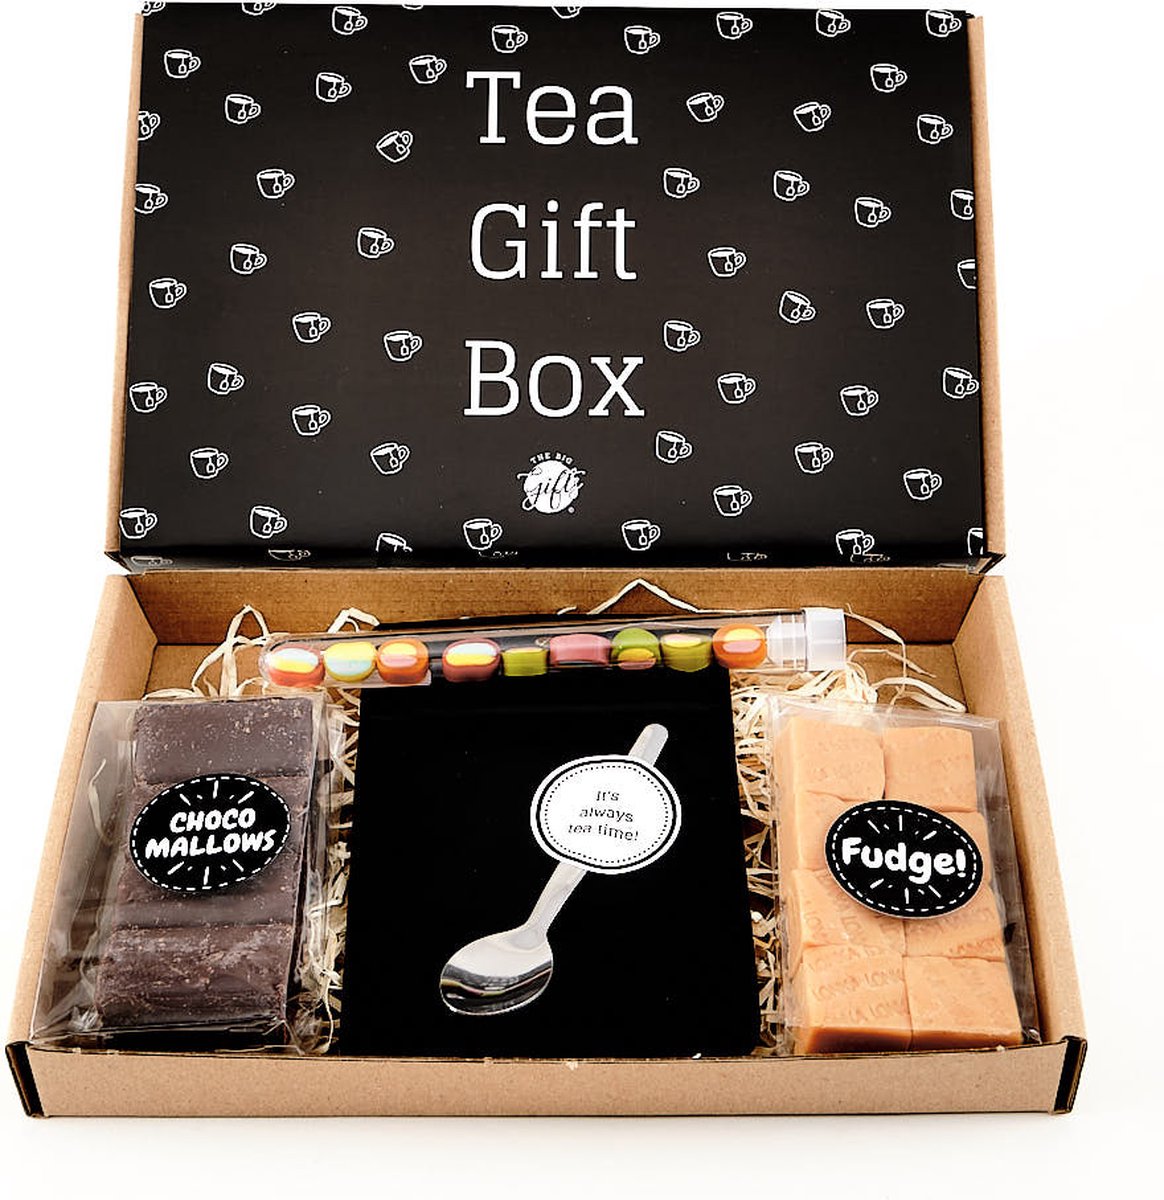 Brievenbuspakket tea gift box - Cadeau - THEE - Brievenbus pakket - The Big Gifts -chocolade- eten-pasen - snoep - cadeau voor man - cadeau voor vrouw - gift - cadeaupakket - Moederdag - Vaderdag - giftset - cadeaubox